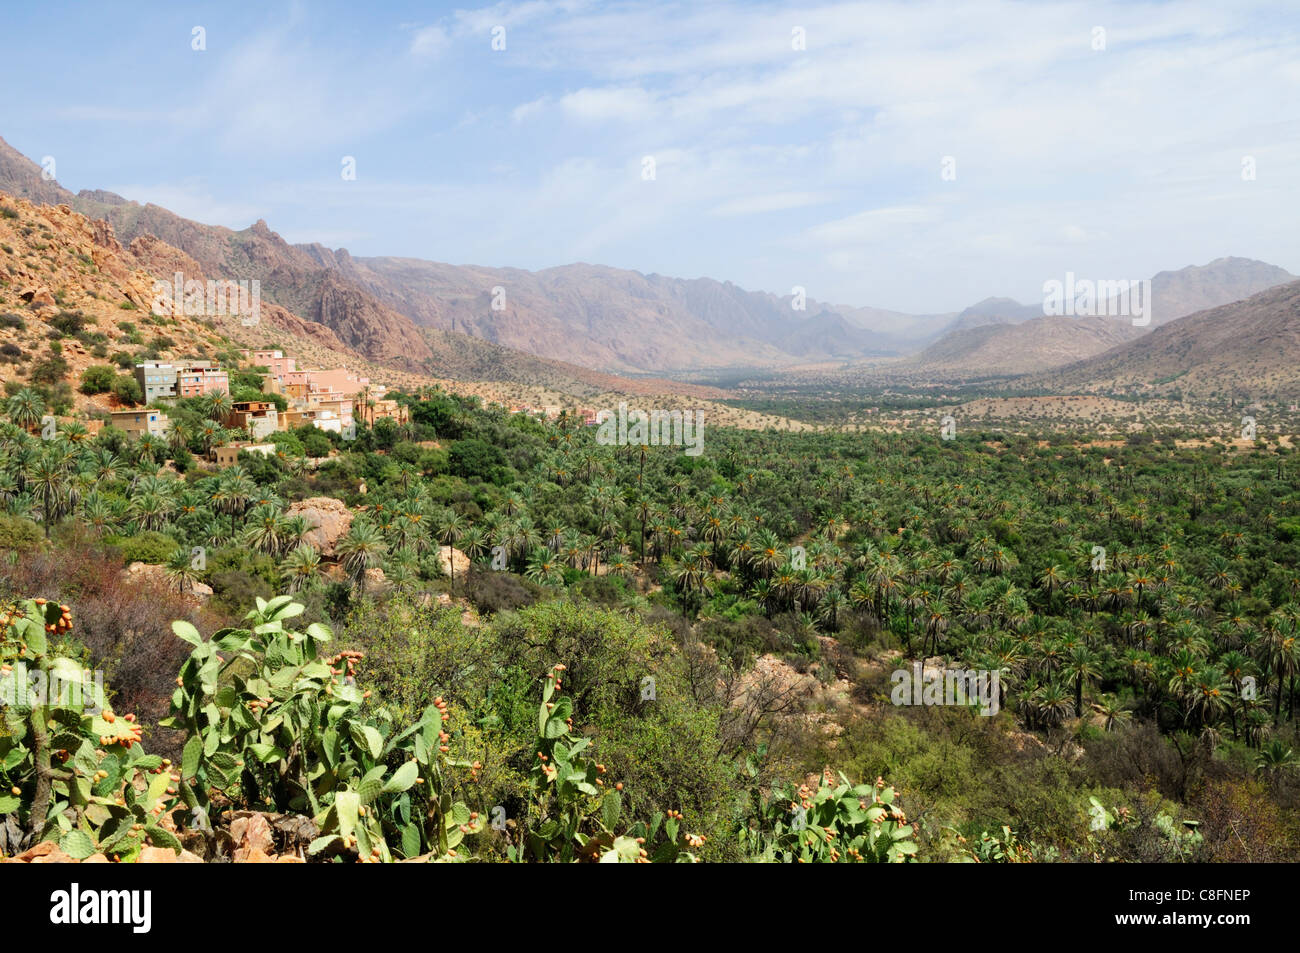 Oasiis in the Ameln Valley, Tafraoute, Souss-Massa-Draa Region, Morocco Stock Photo